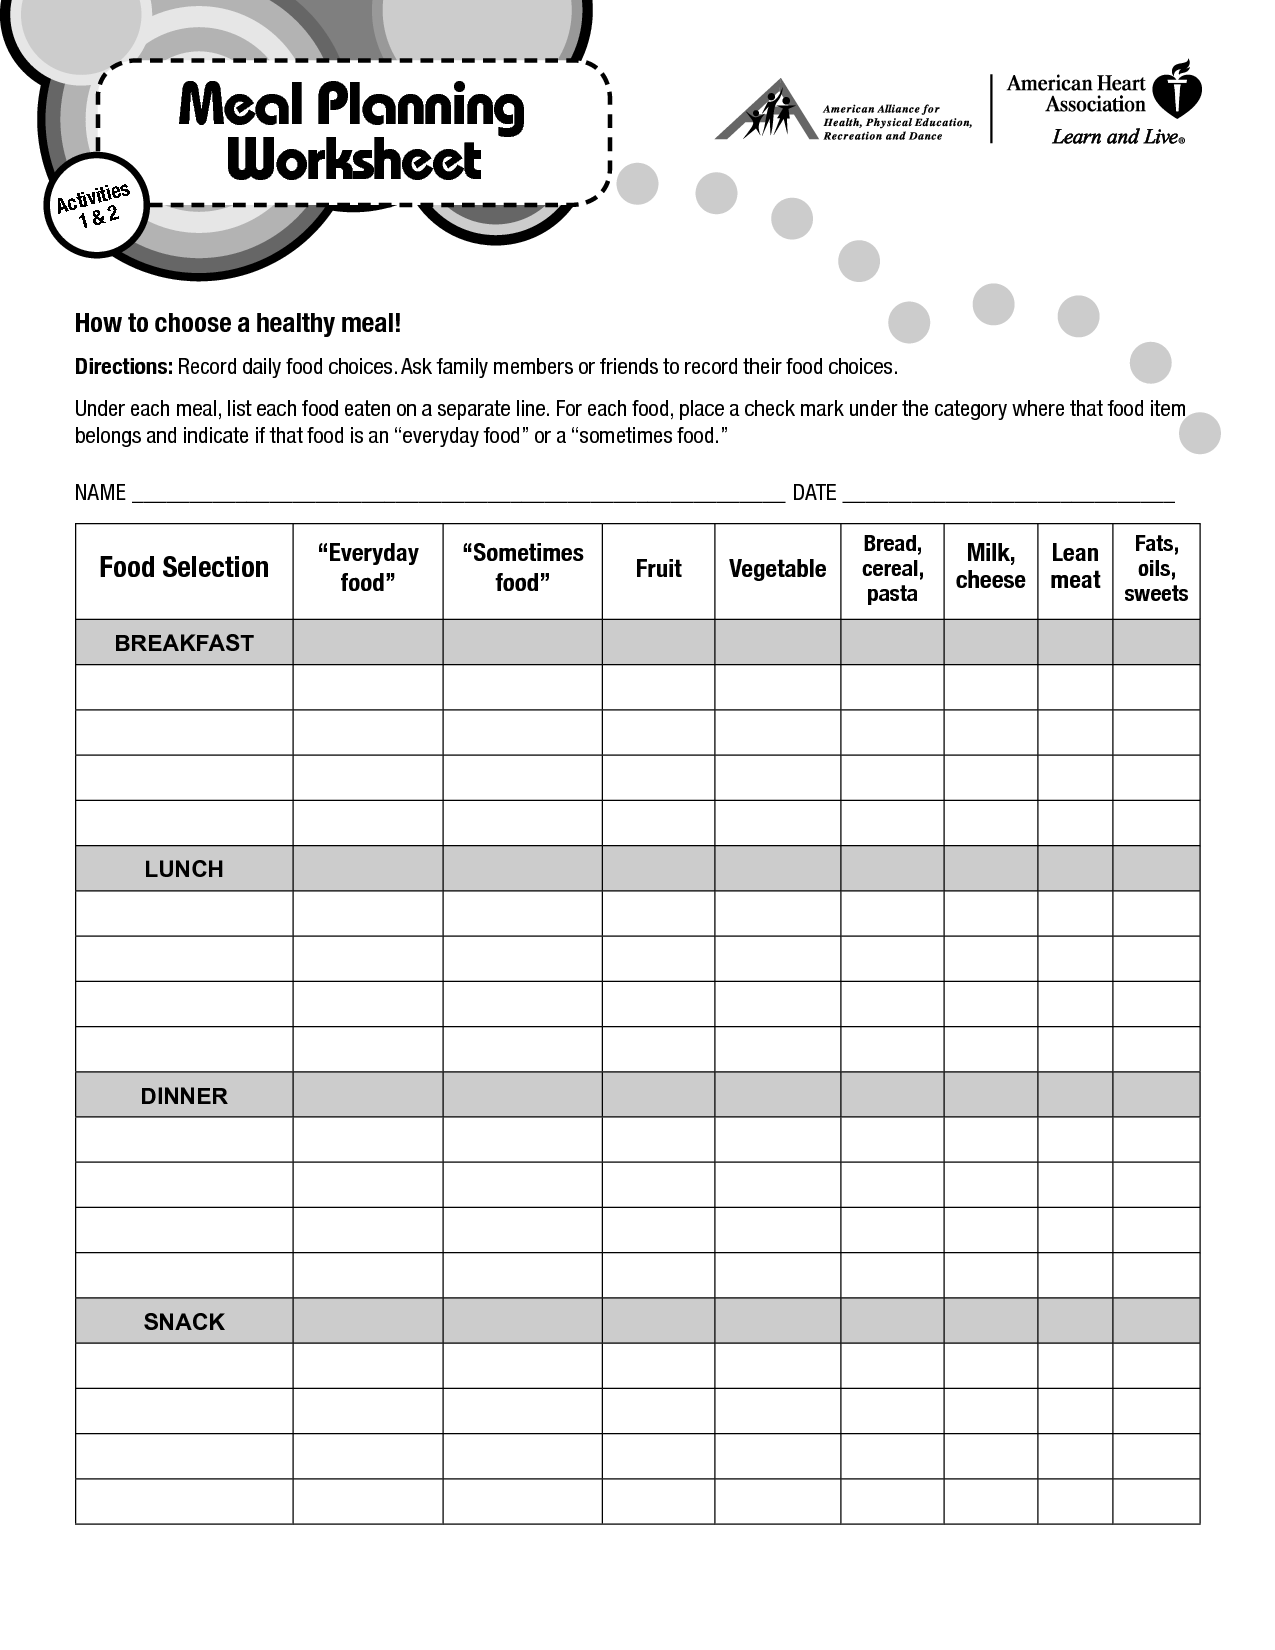 19-best-images-of-meal-planning-printable-worksheets-menu-planning-worksheet-5-day-meal